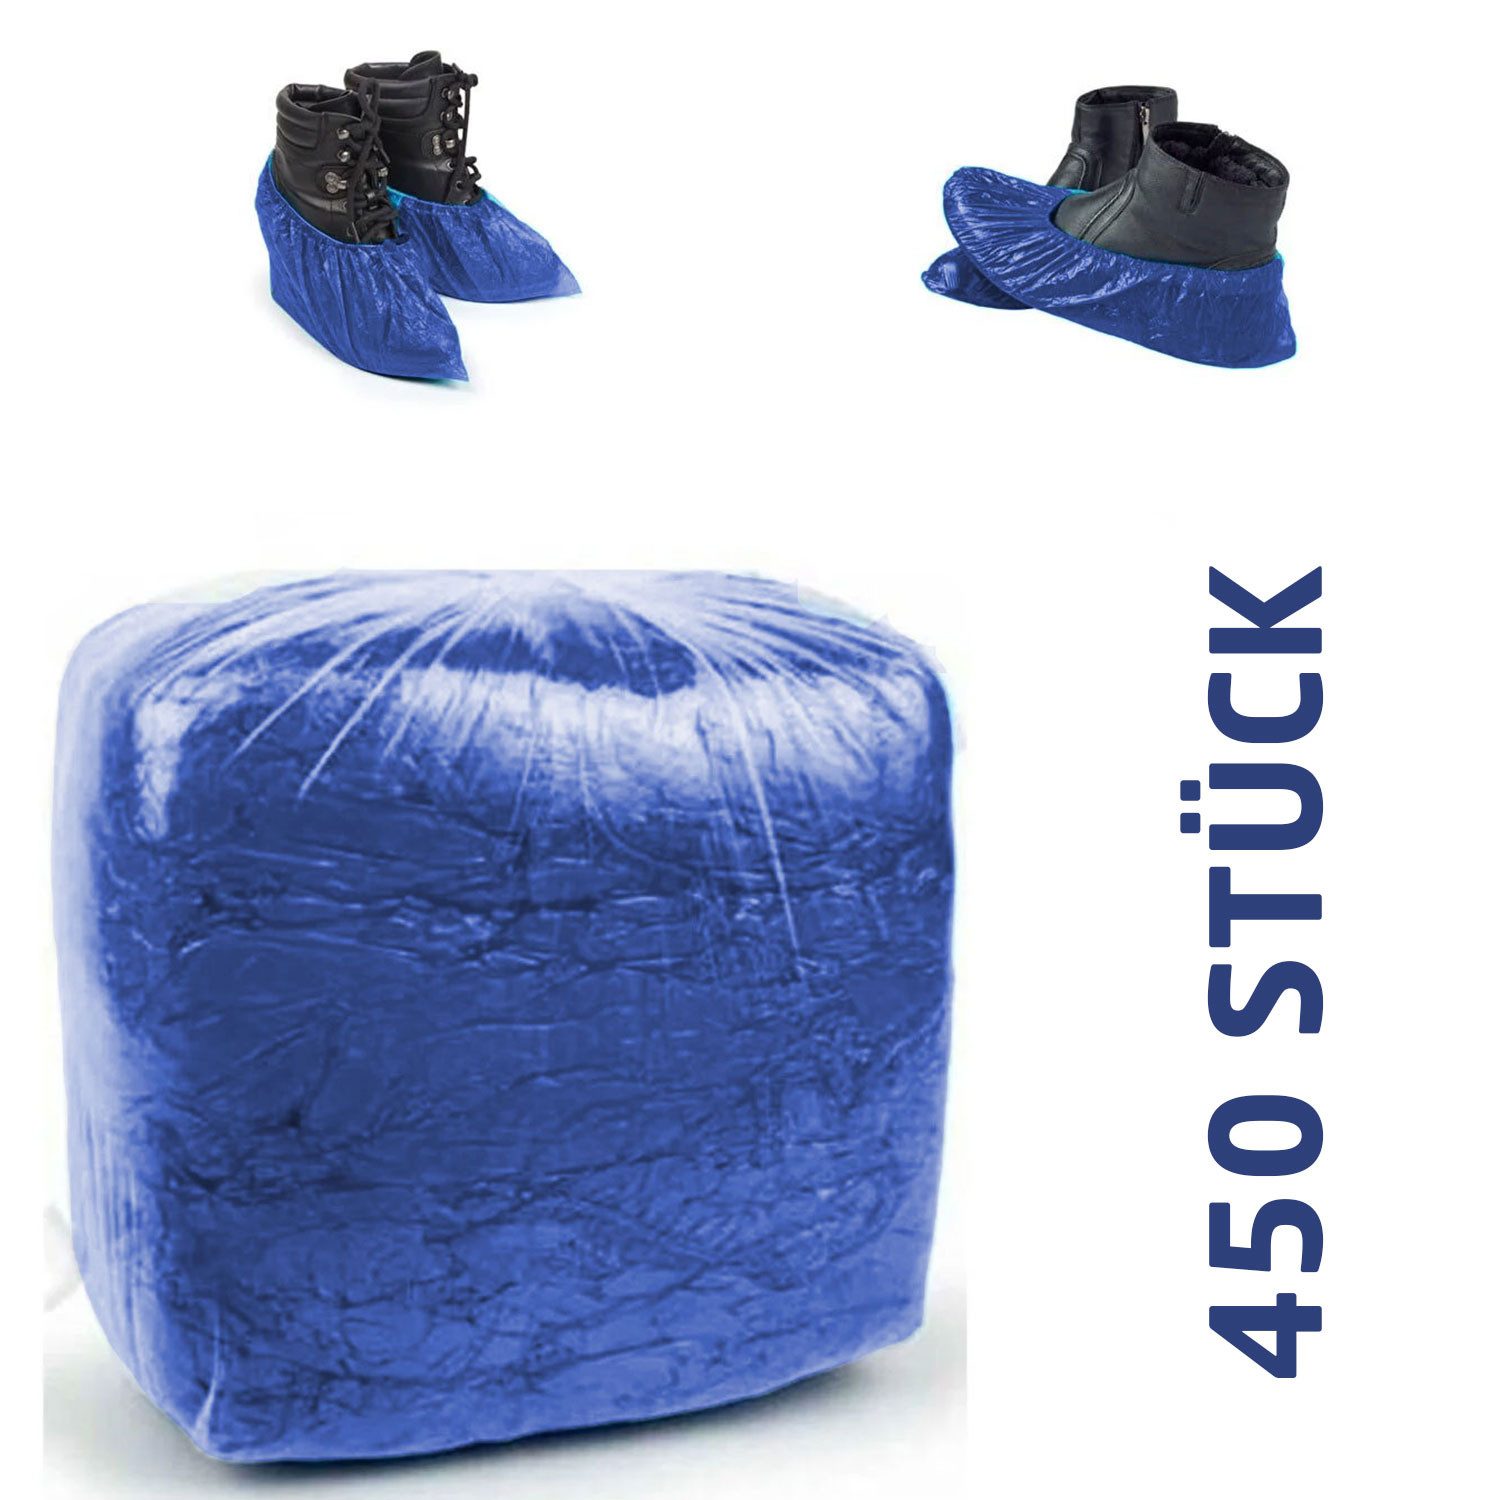 Jungengel Schuhüberzieher Einweg 450x Stück Überschuhe in Blau PP Überzieher Schuhschutz (450-St)